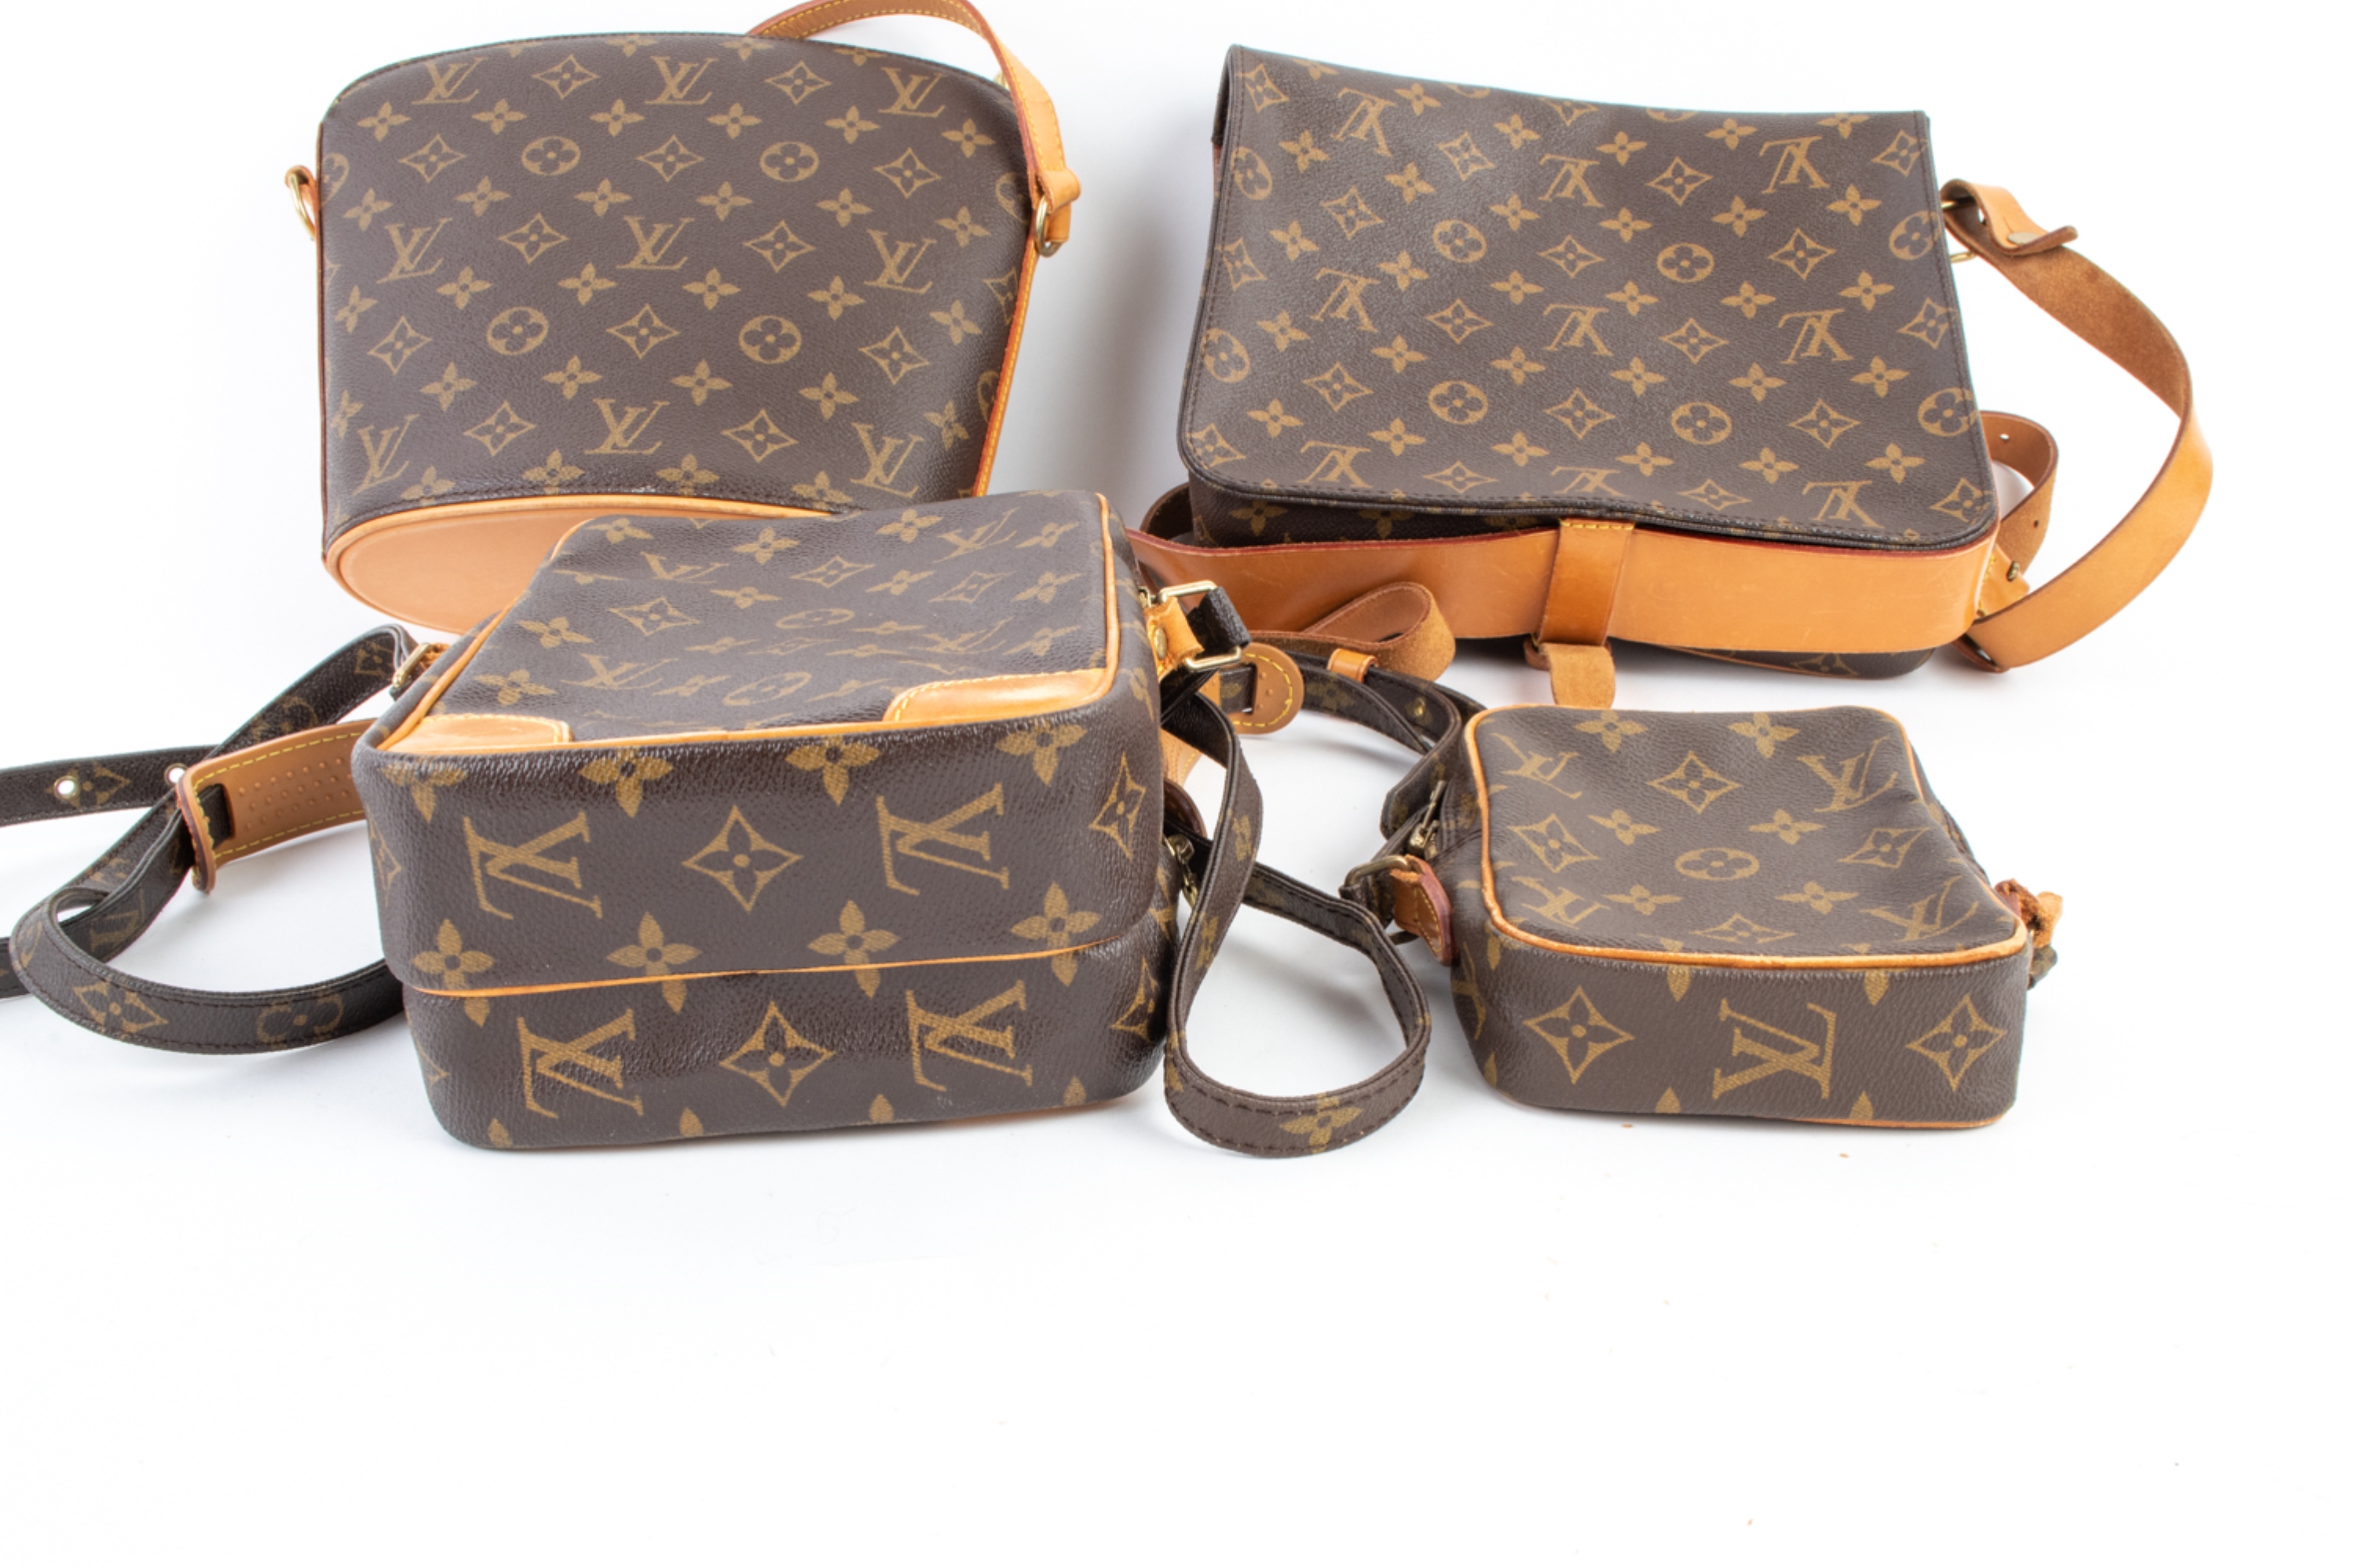 Sold at Auction: Louis Vuitton Drouot Shoulder Bag, in a brown